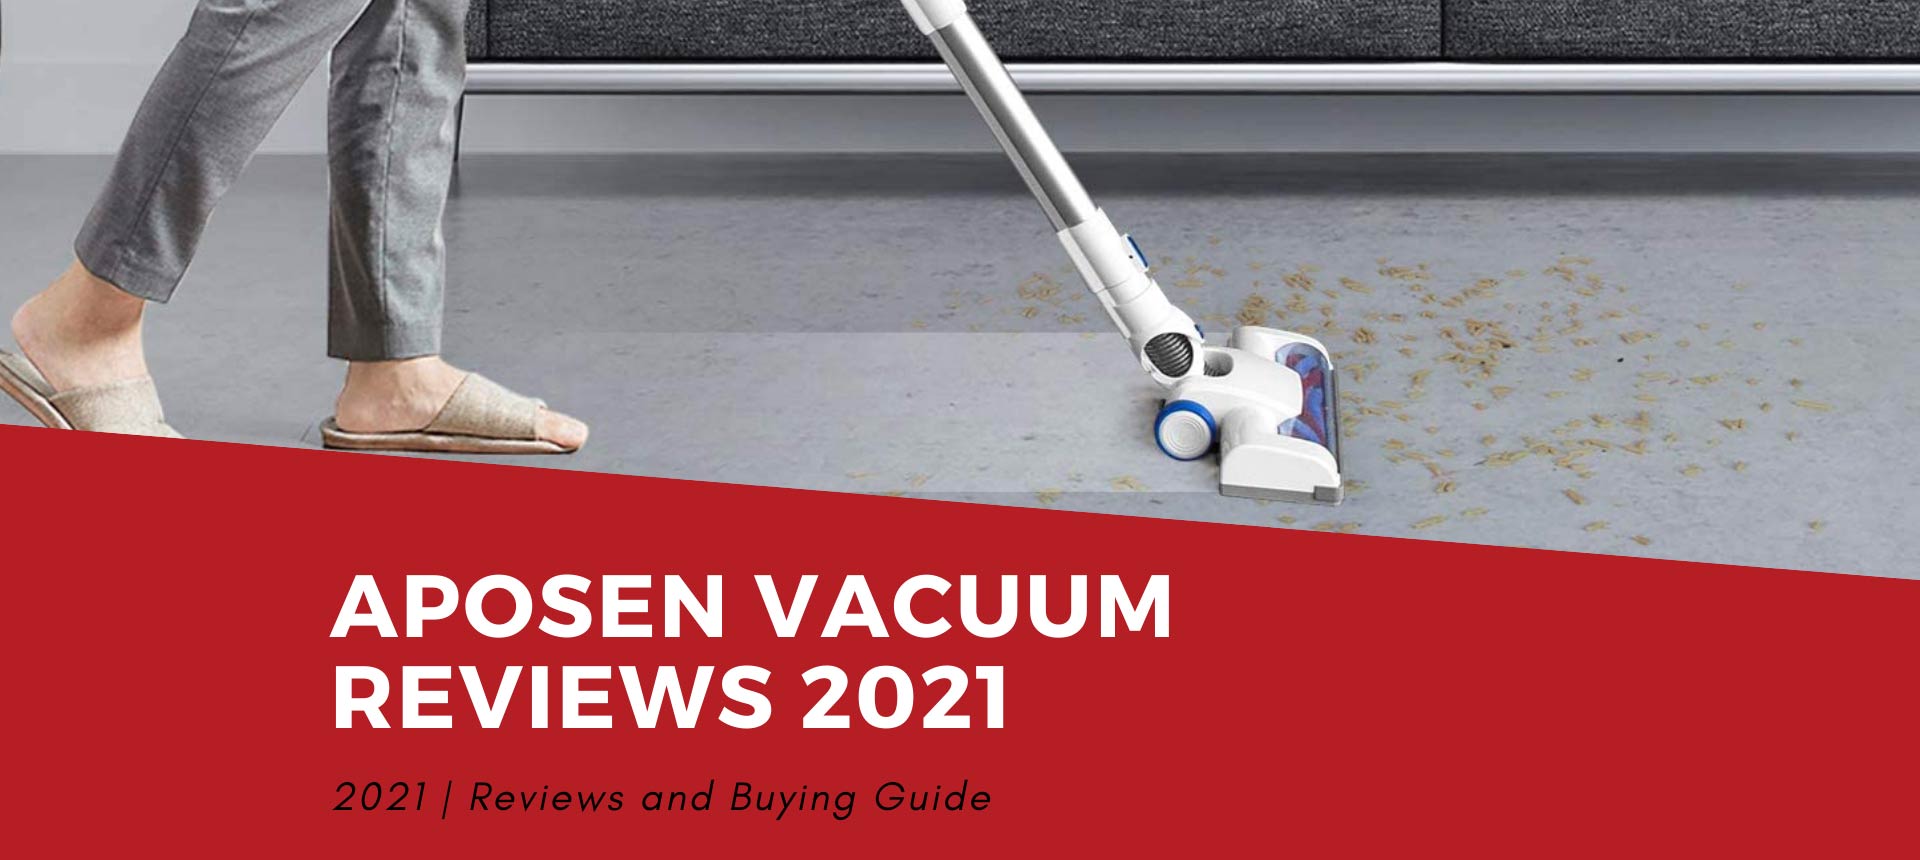 Aposen Vacuum Reviews 2021